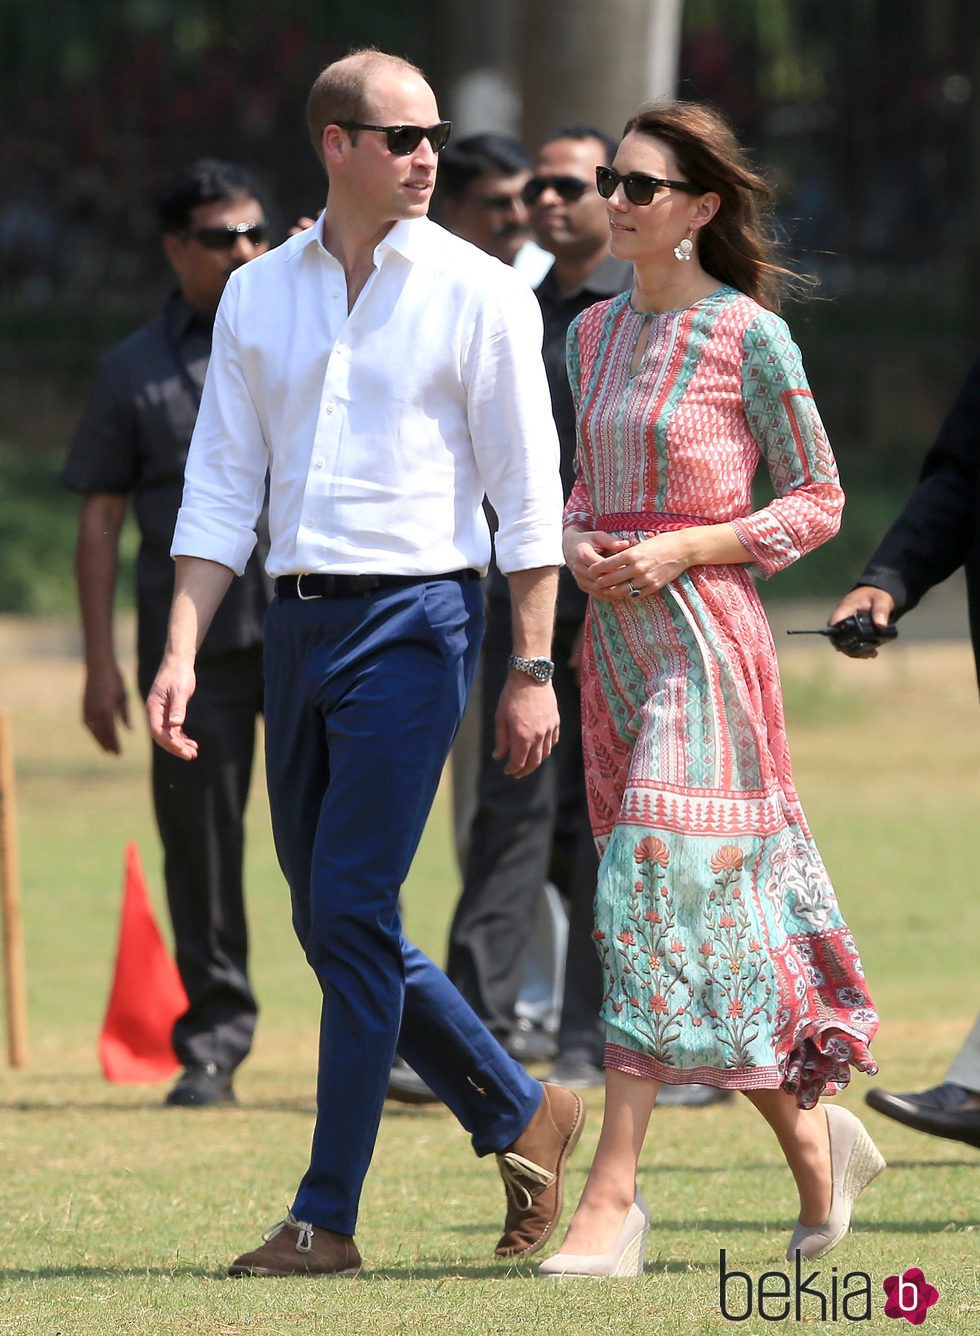 Duques de Cambridge acuden a un evento con ONGs en su viaje a la India